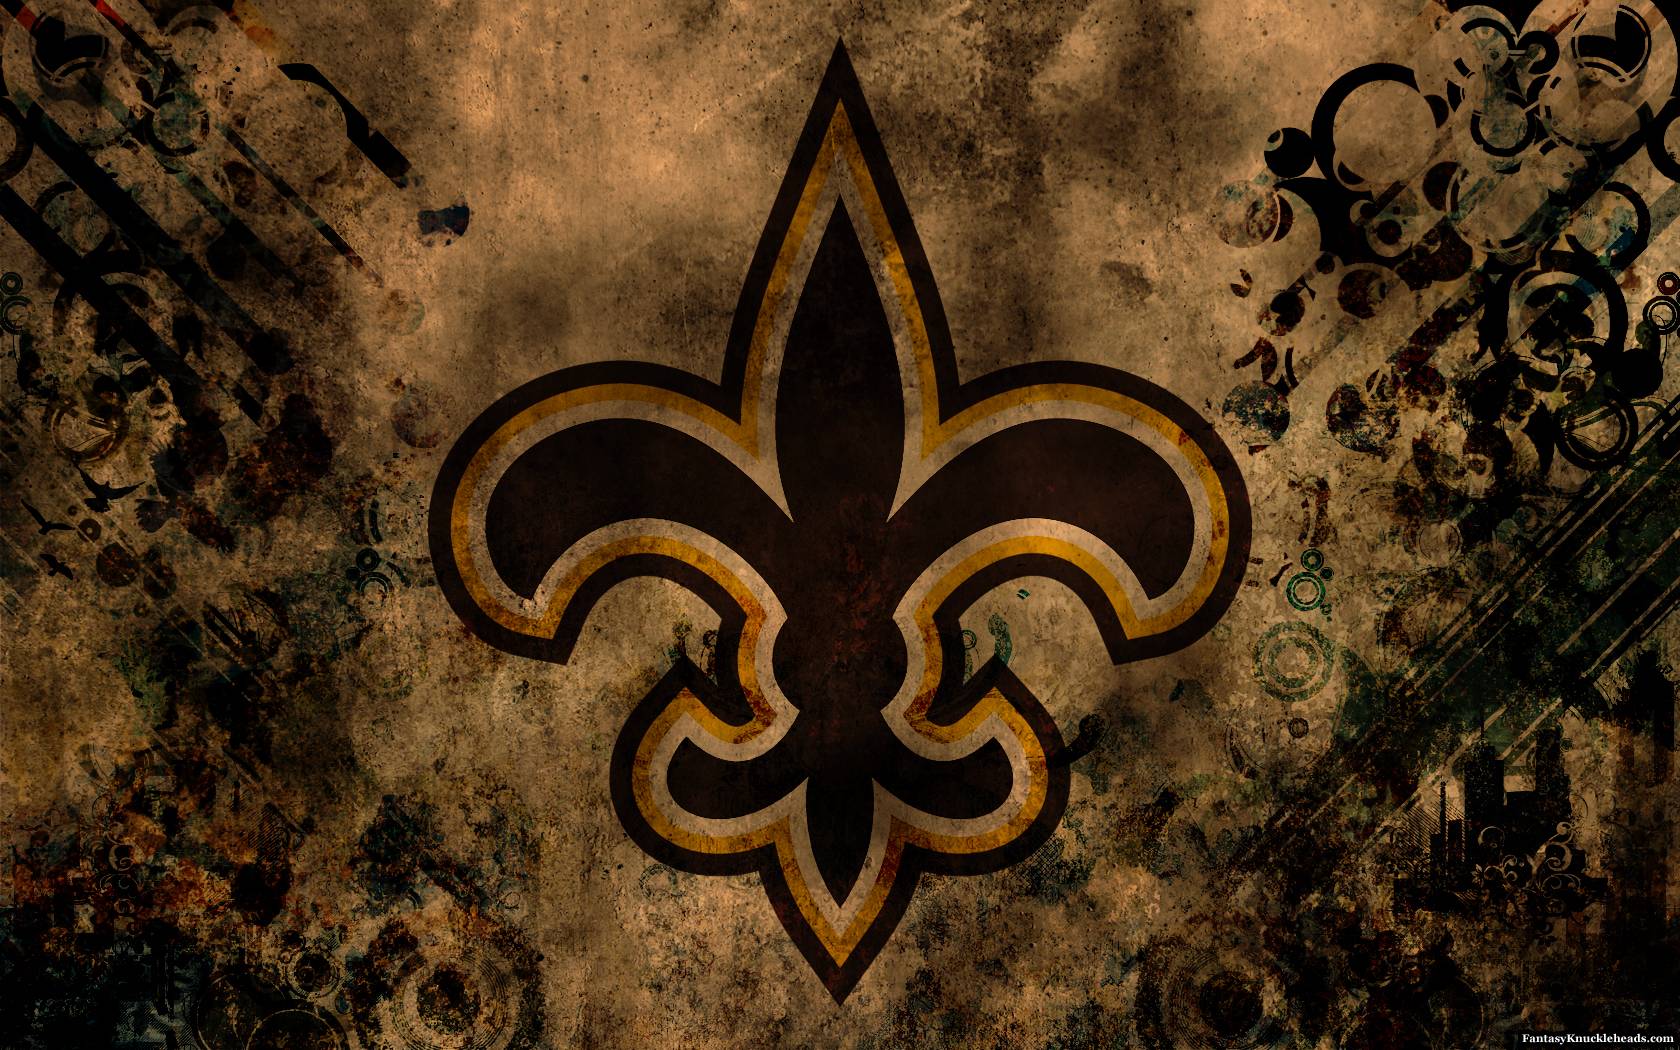 New Orleans Saints wallpaper. New Orleans Saints background